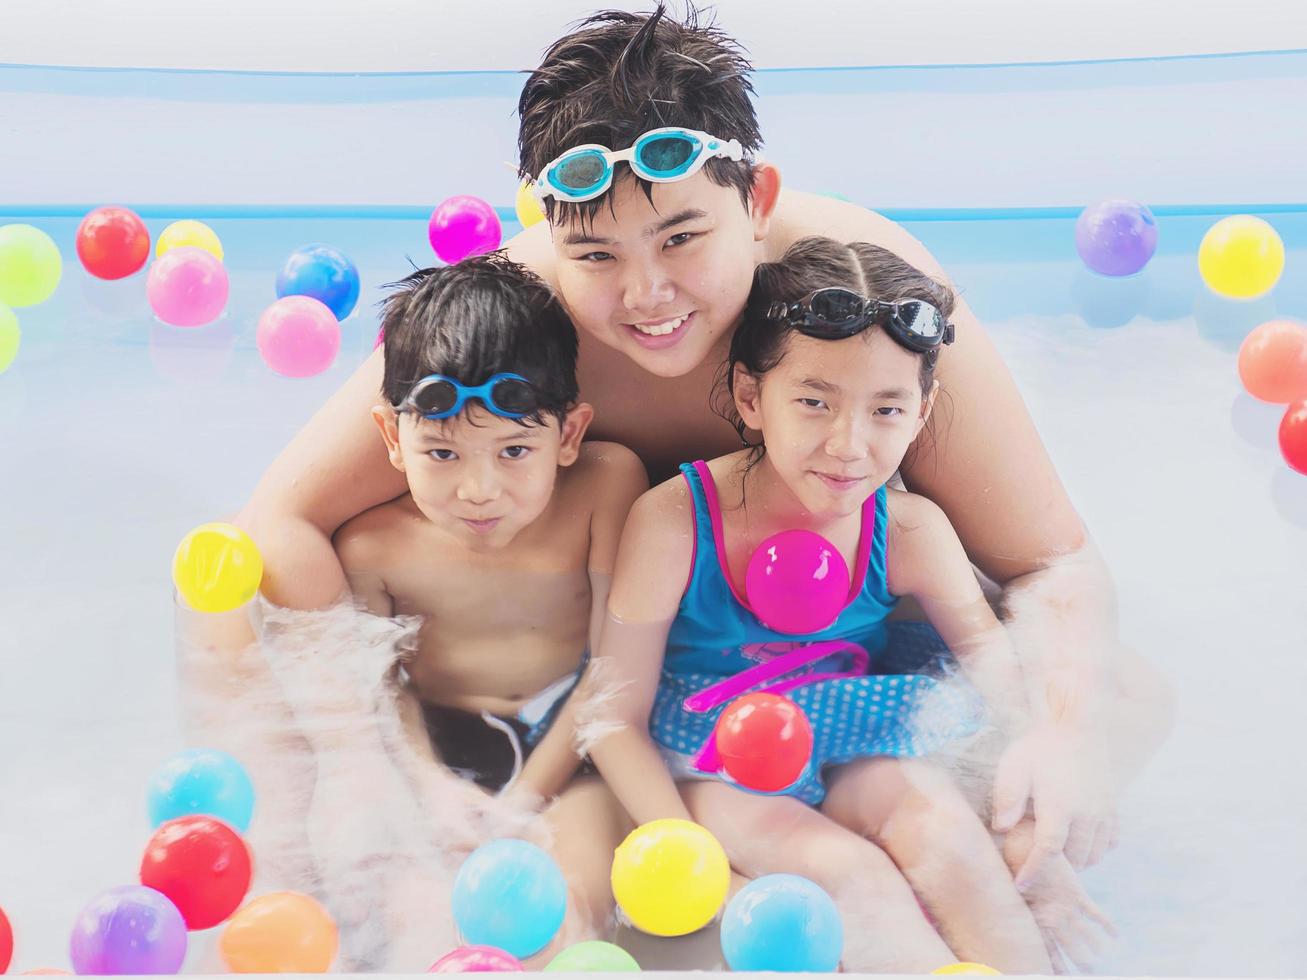 la confraternita asiatica sta giocando in una piscina d'acqua per bambini con palline colorate. la foto è focalizzata sul viso del bambino più grande.